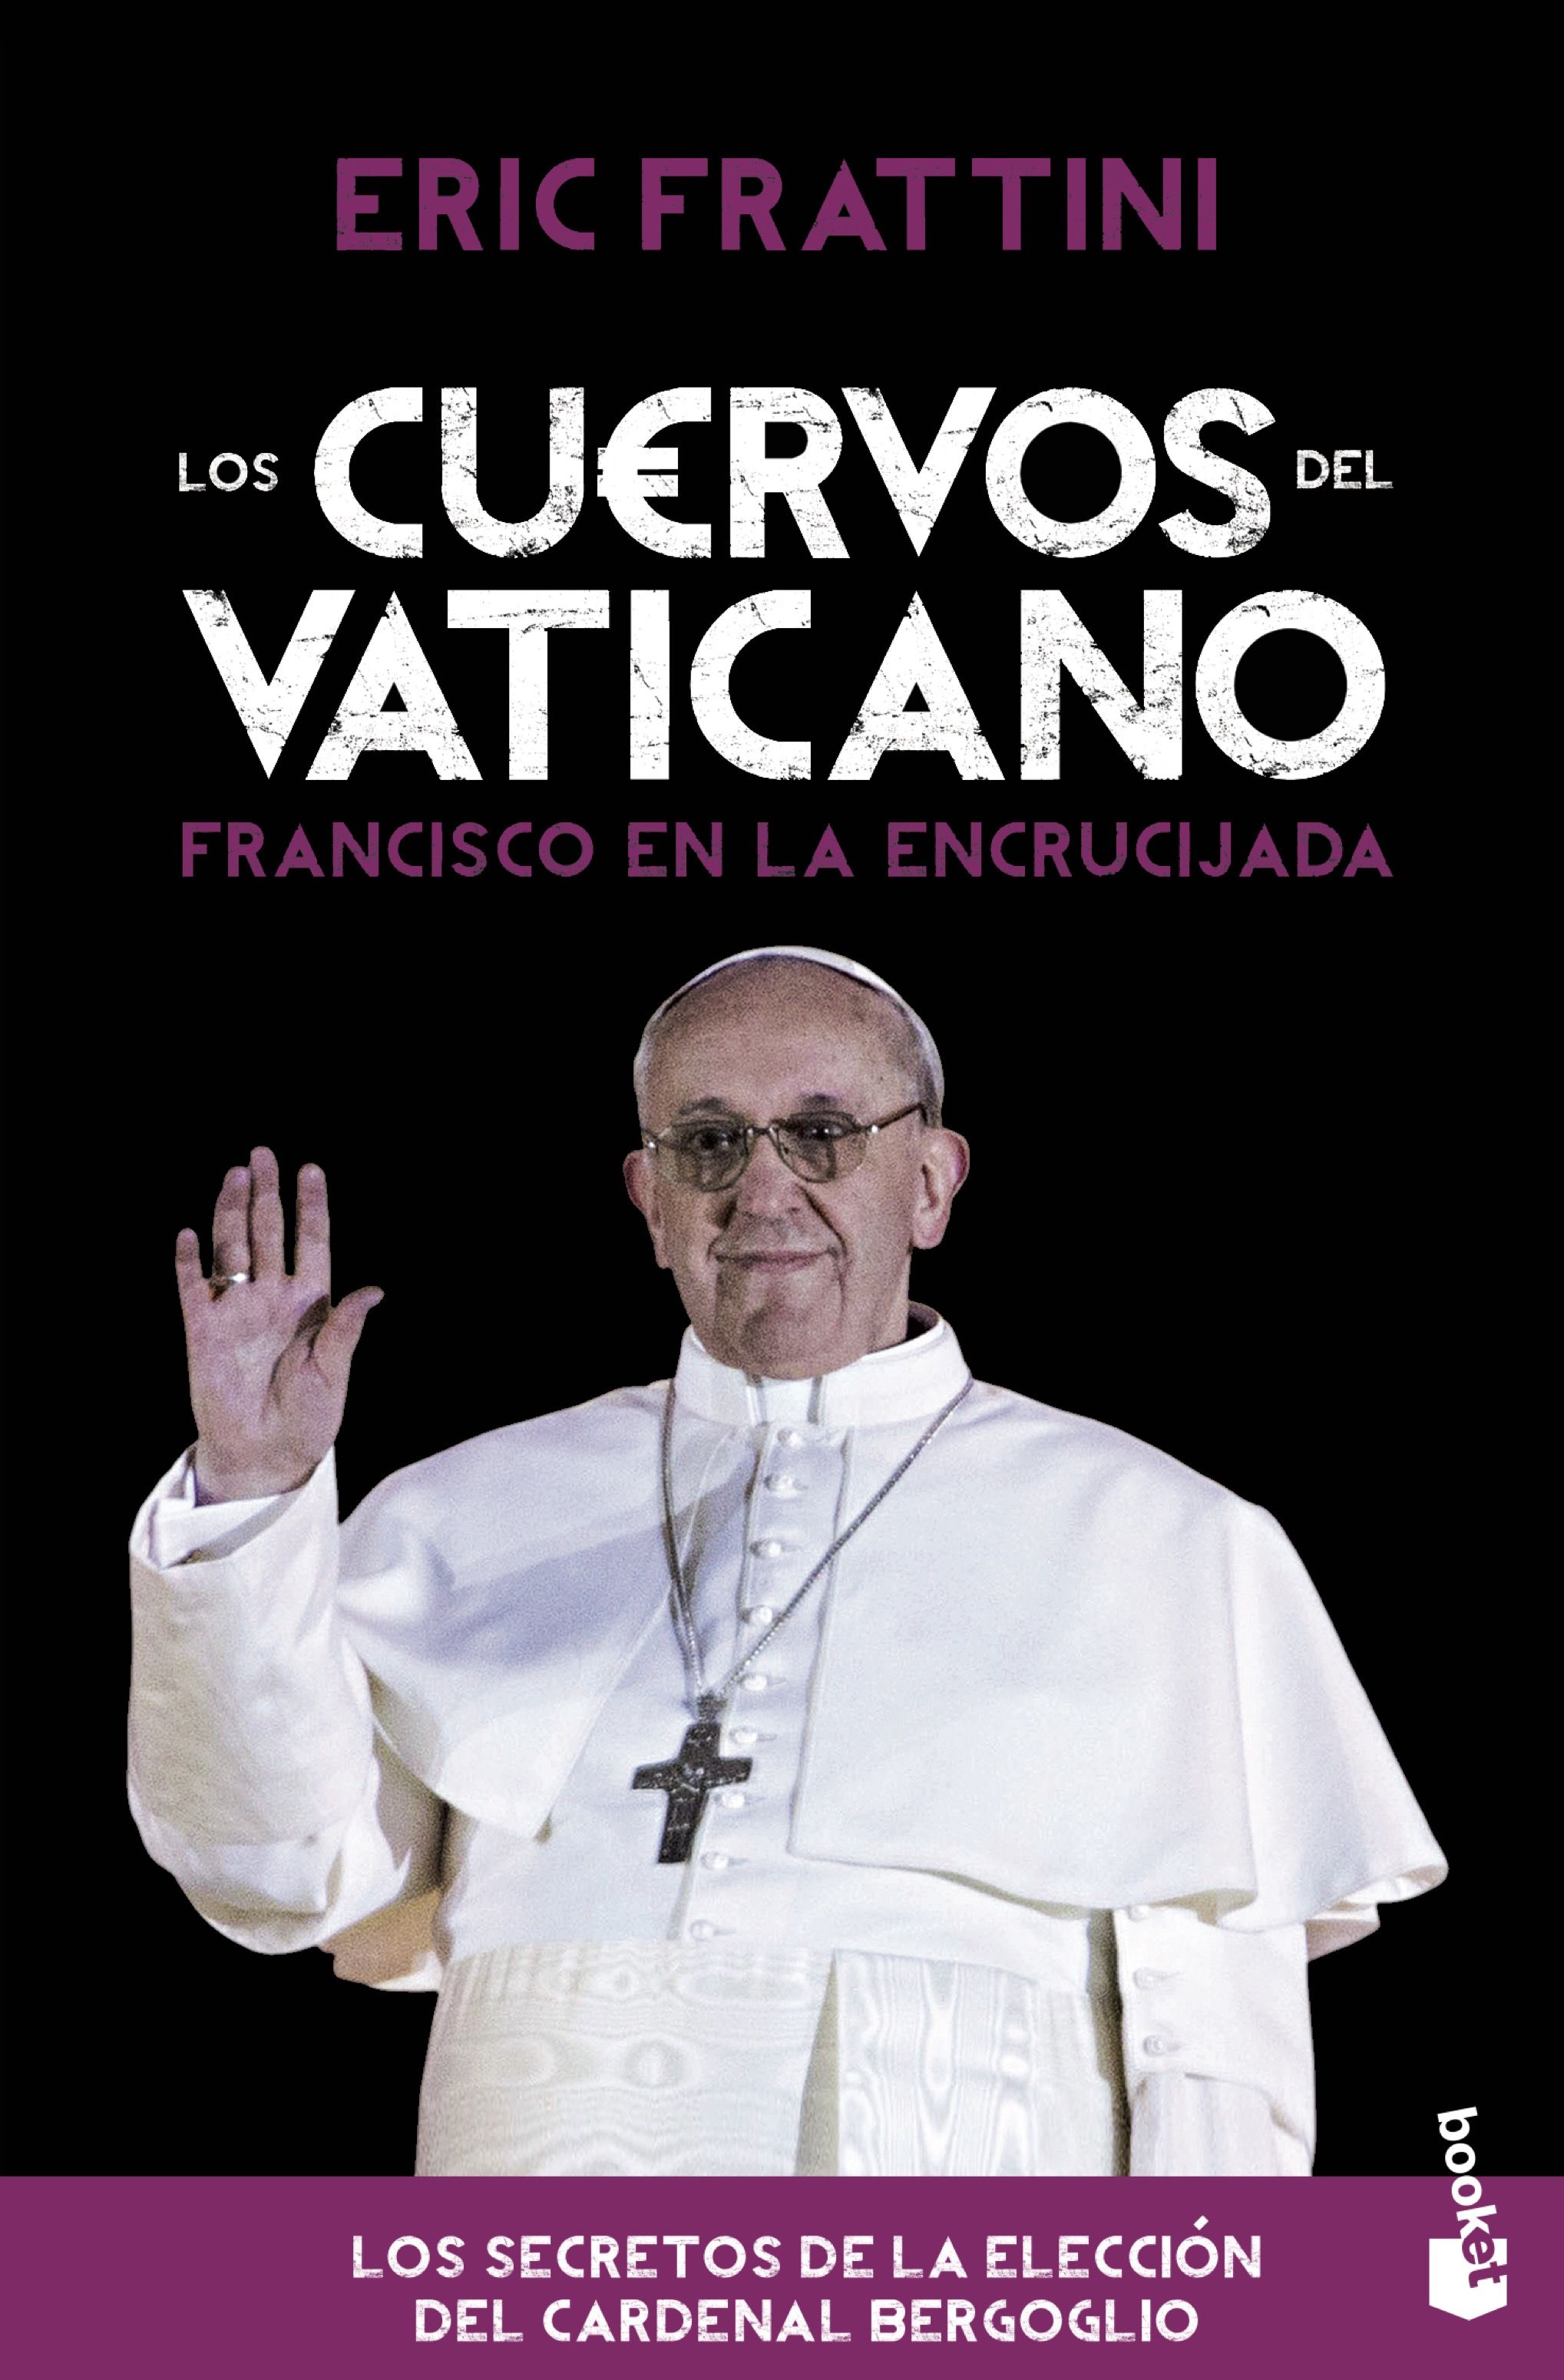 Cuervos del Vaticano, Los "Francisco en la encrucijada"